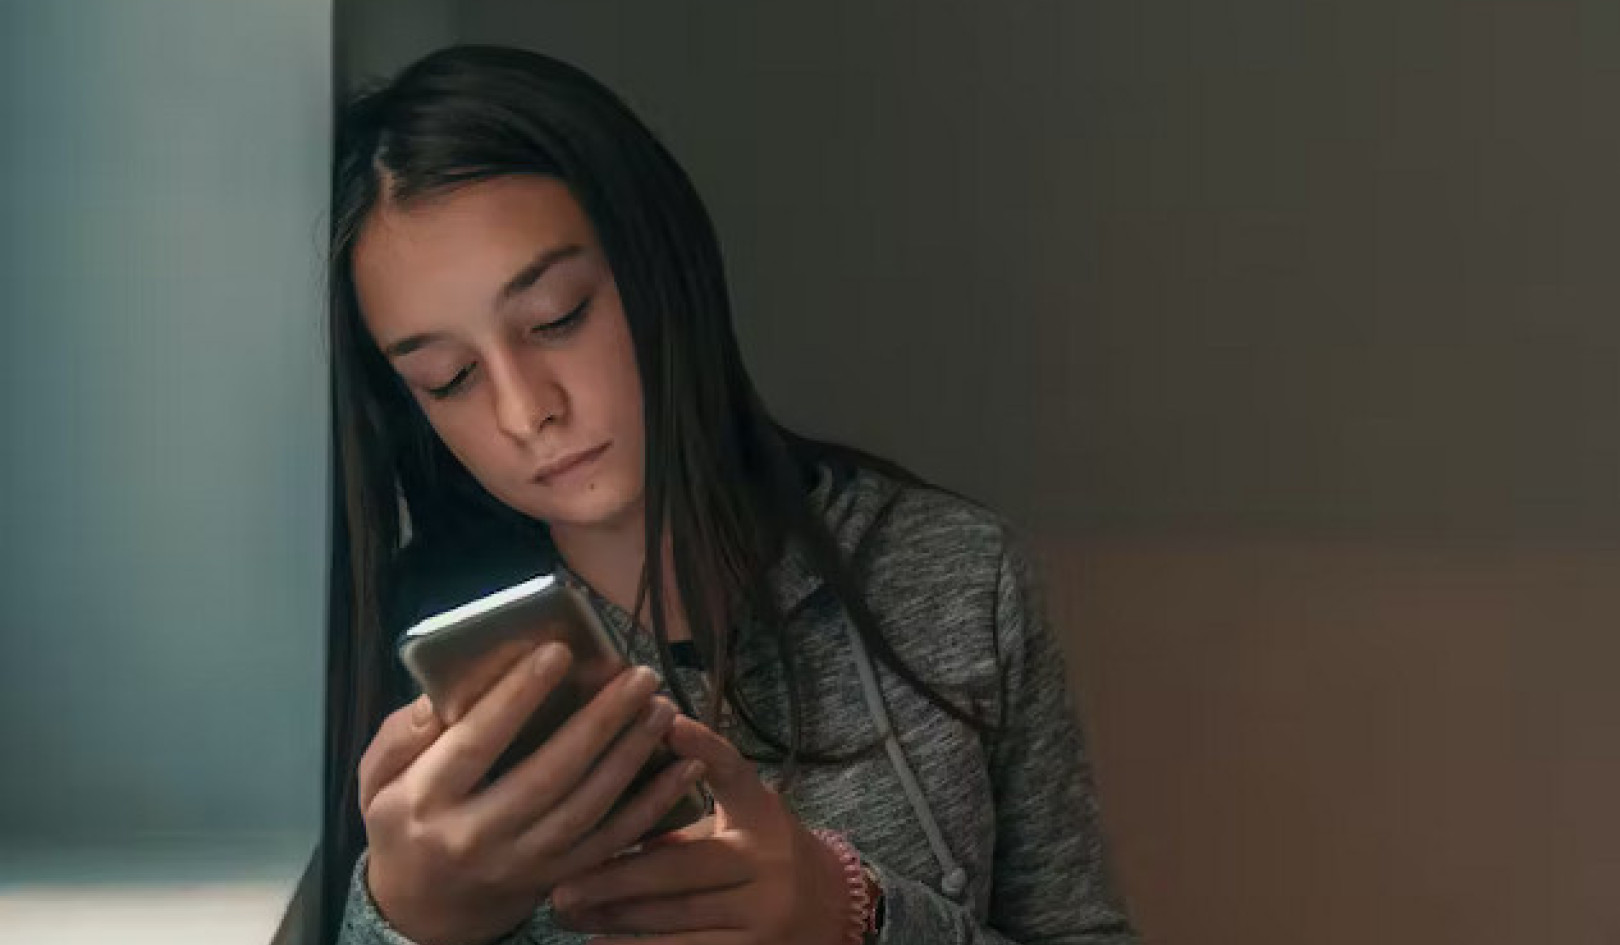 Навігація цифровим мінним полем: навіщо молоді потрібна надійна підтримка проти сексуальної шкоди онлайн